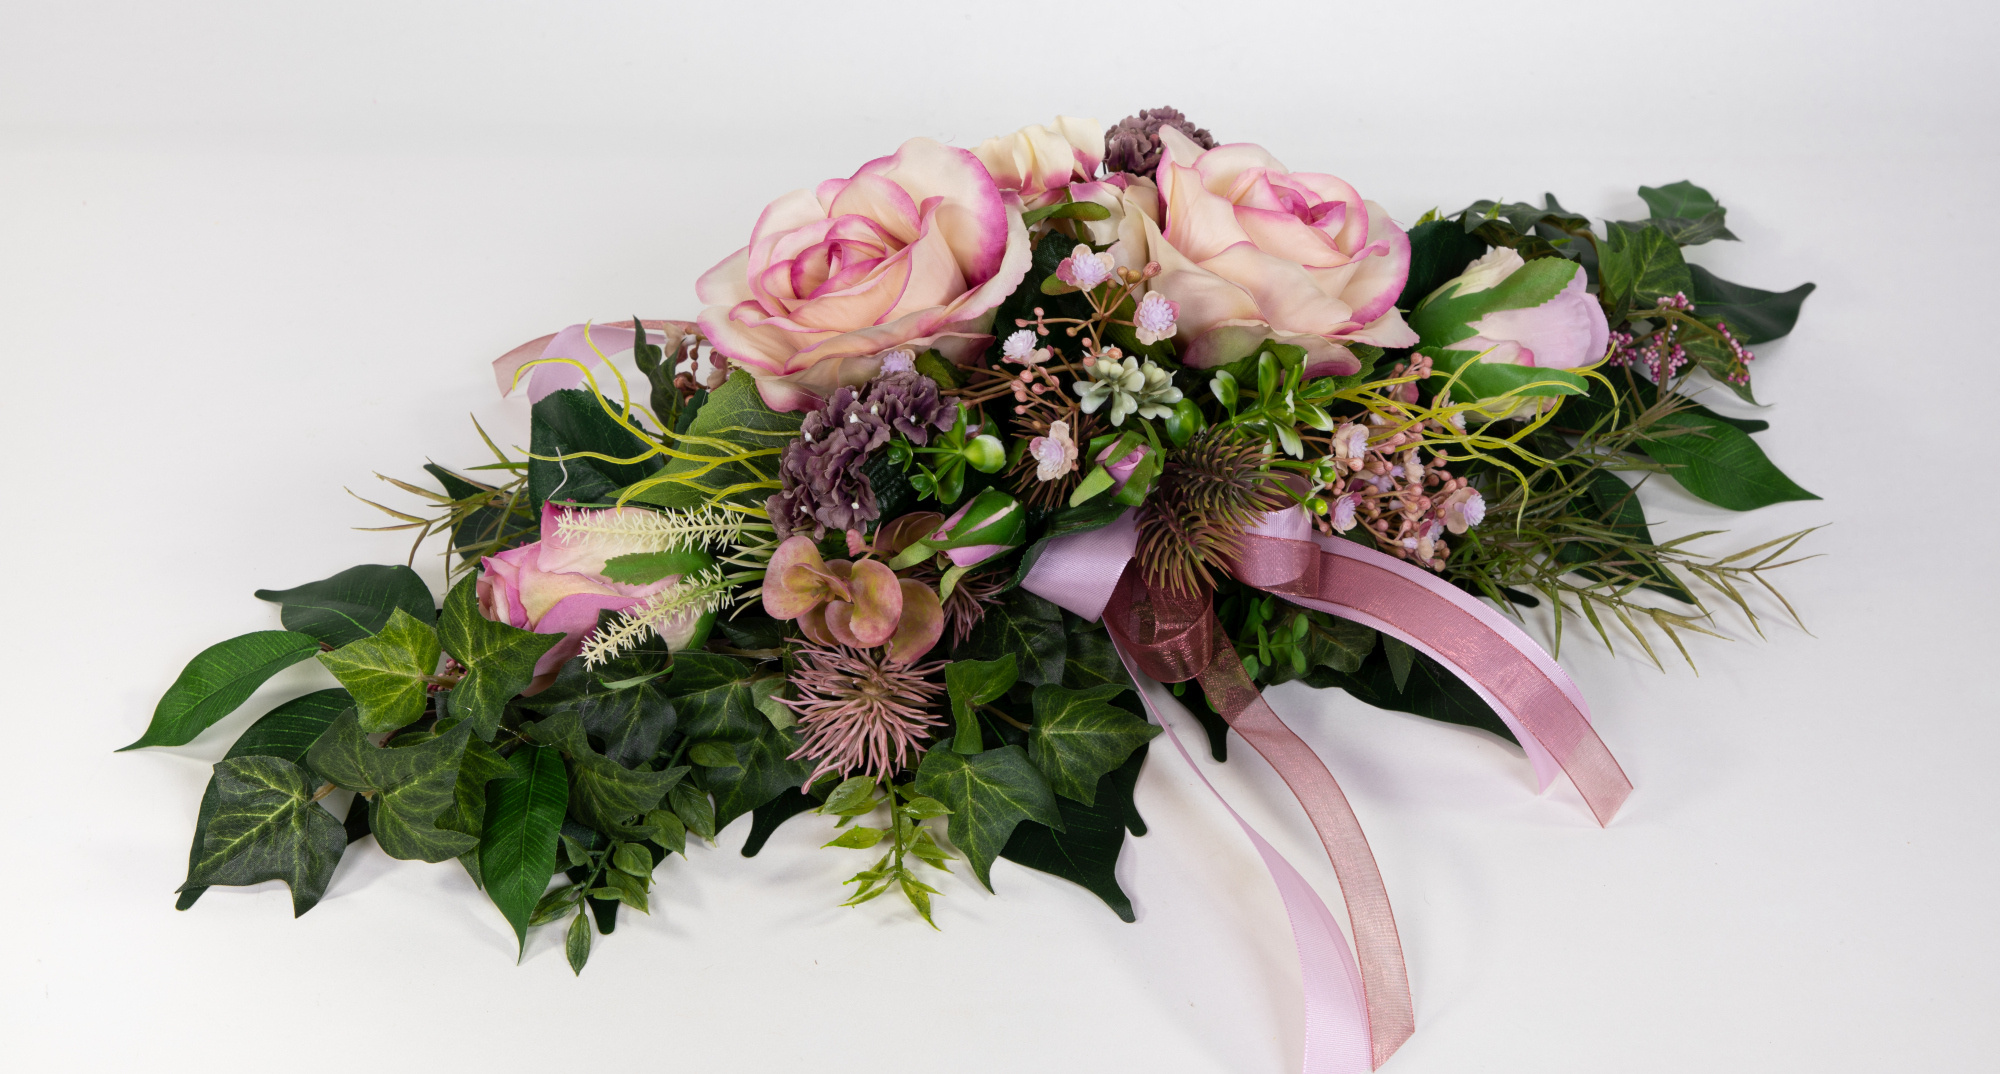 Tischgesteck länglich 60cm rosa-pink mit Rosen und Hortensie Kunstblumen künstliche Blumen